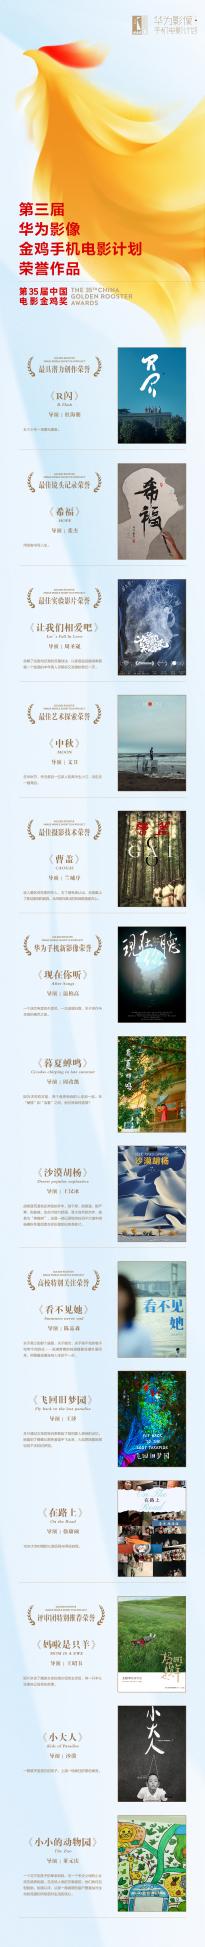 第三届“华为影像・金鸡手机电影计划”在厦门举办， 56 部作品入围角逐八大奖项